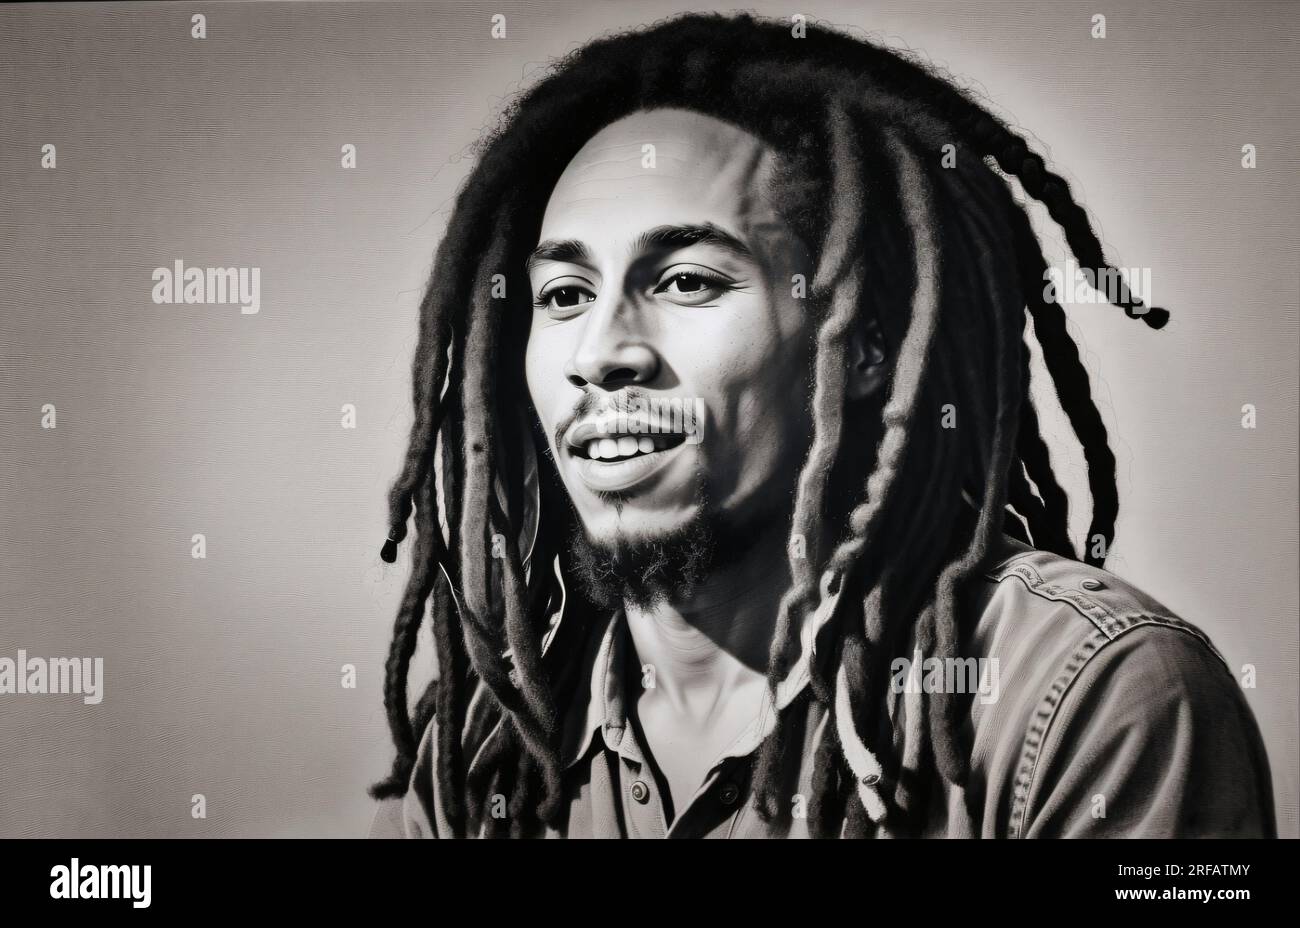 How I draw Bob Marley - YouTube